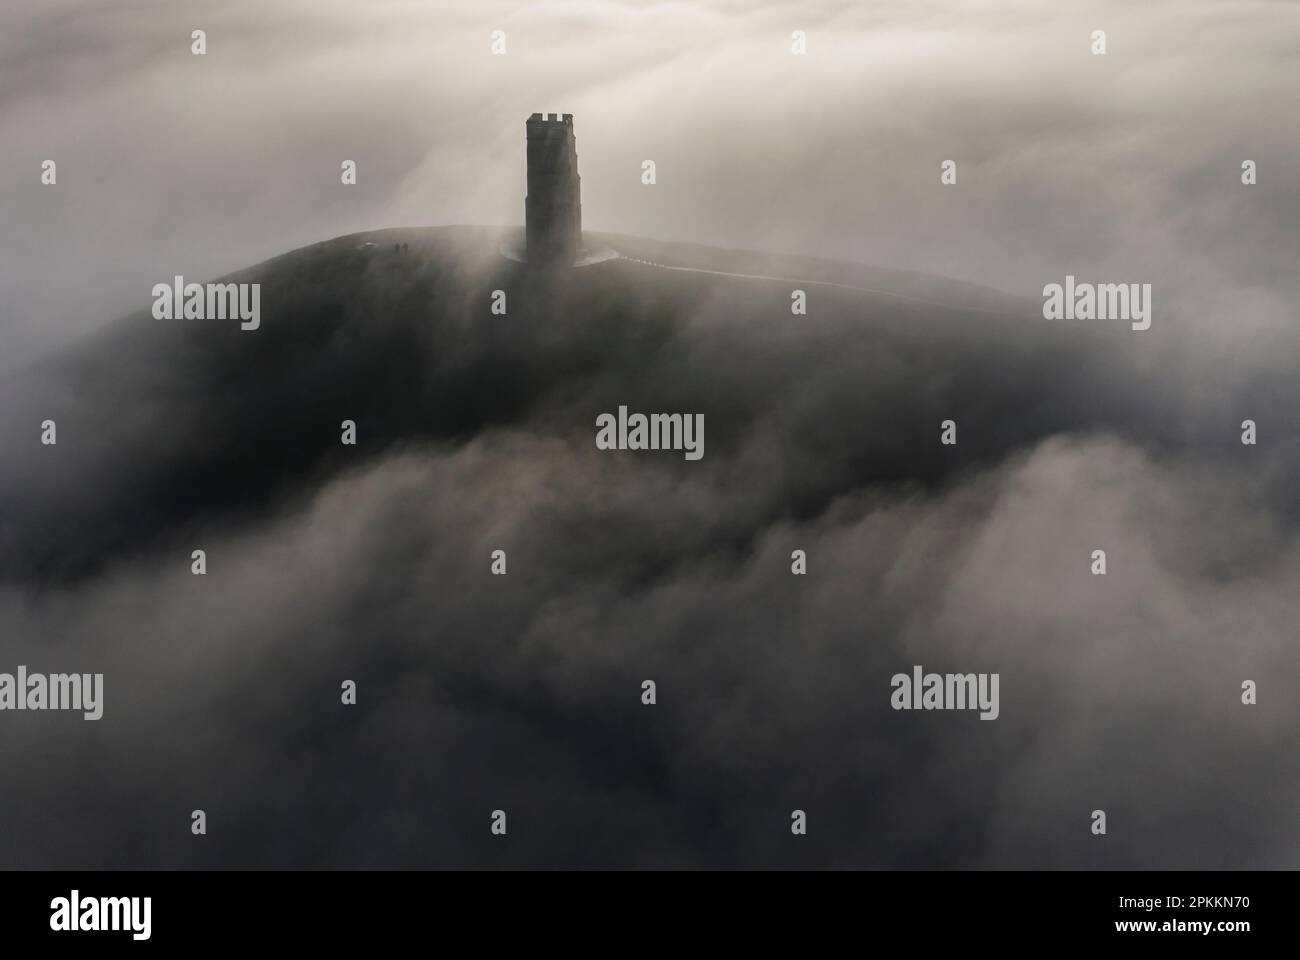 Vue aérienne de St. La tour de Michael sur Glastonbury Tor entourée d'une mer de brume en hiver, Glastonbury, Somerset, Angleterre, Royaume-Uni, Europe Banque D'Images